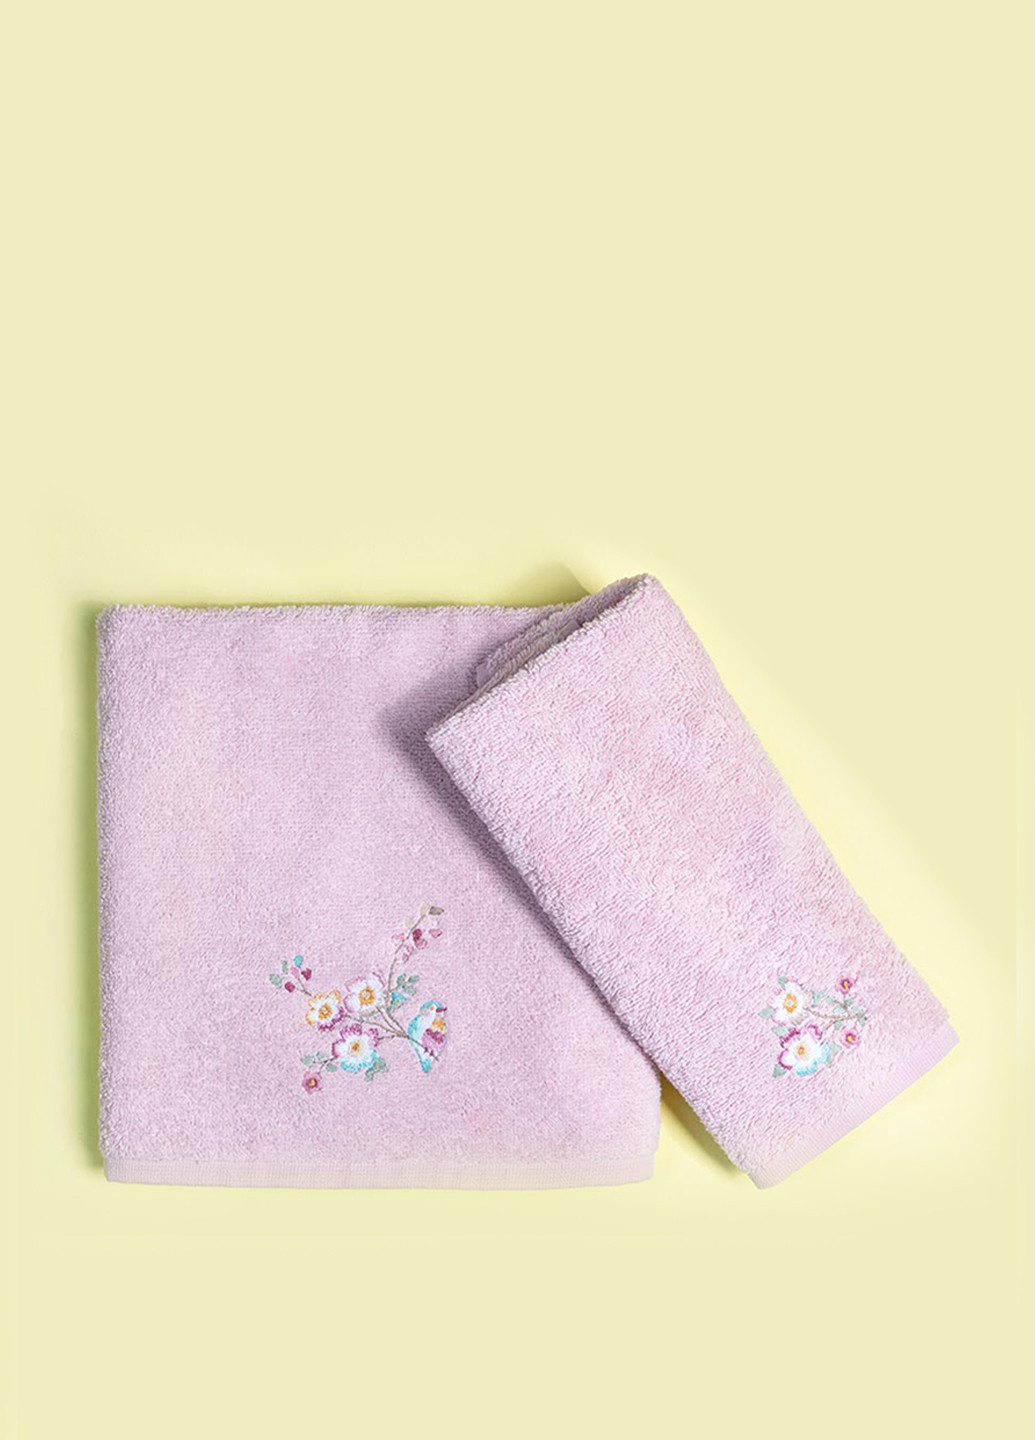 English Home полотенце flower love (2 шт.) 50х76 см, 30х40 см однотонный розовый производство - Турция